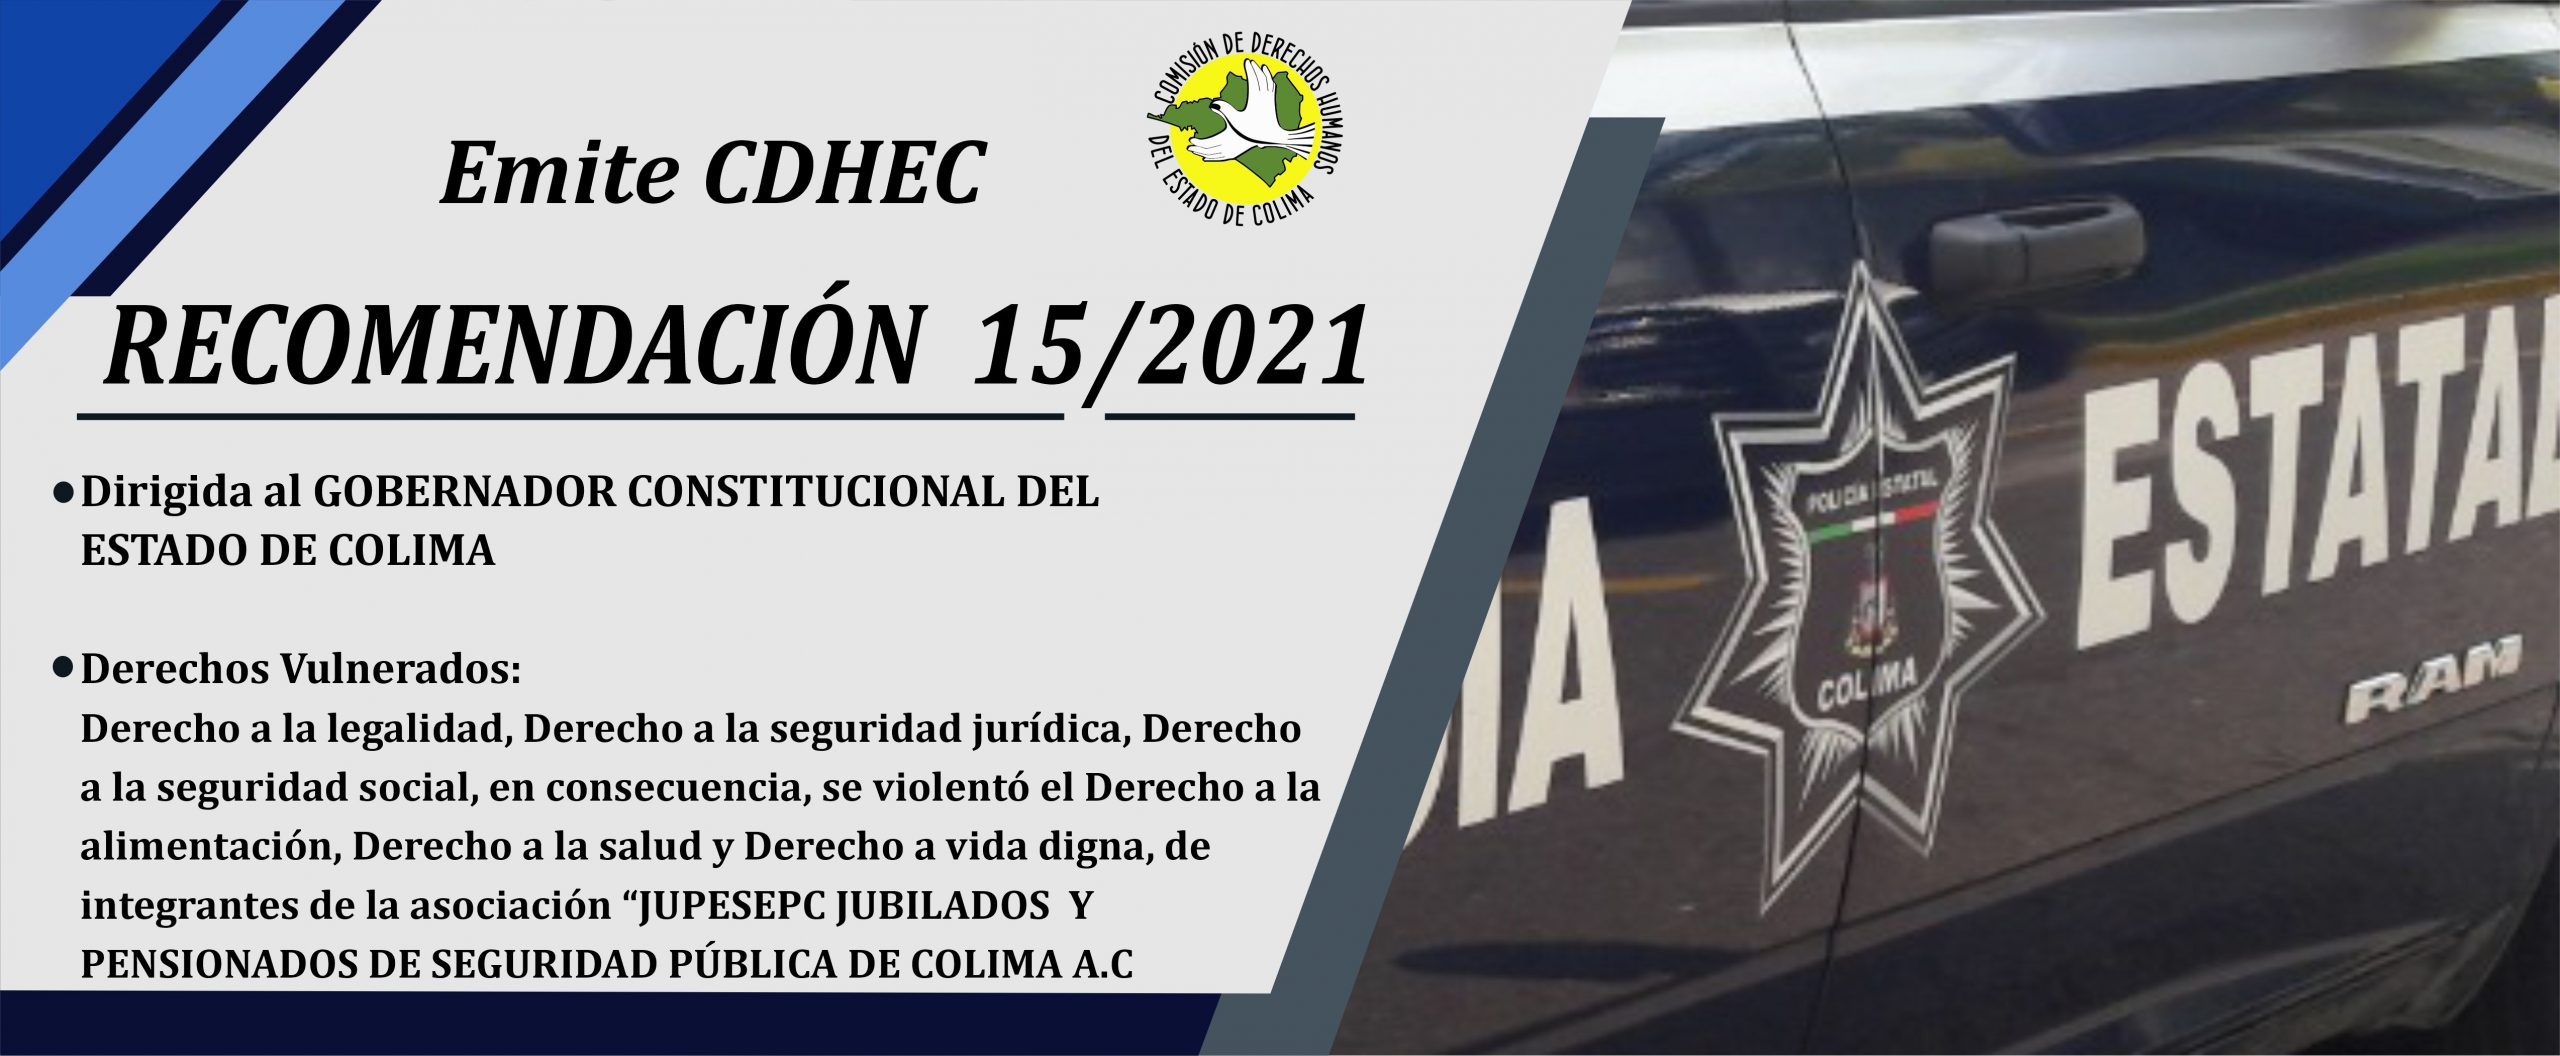 Emite CDHEC Recomendación 15/2021